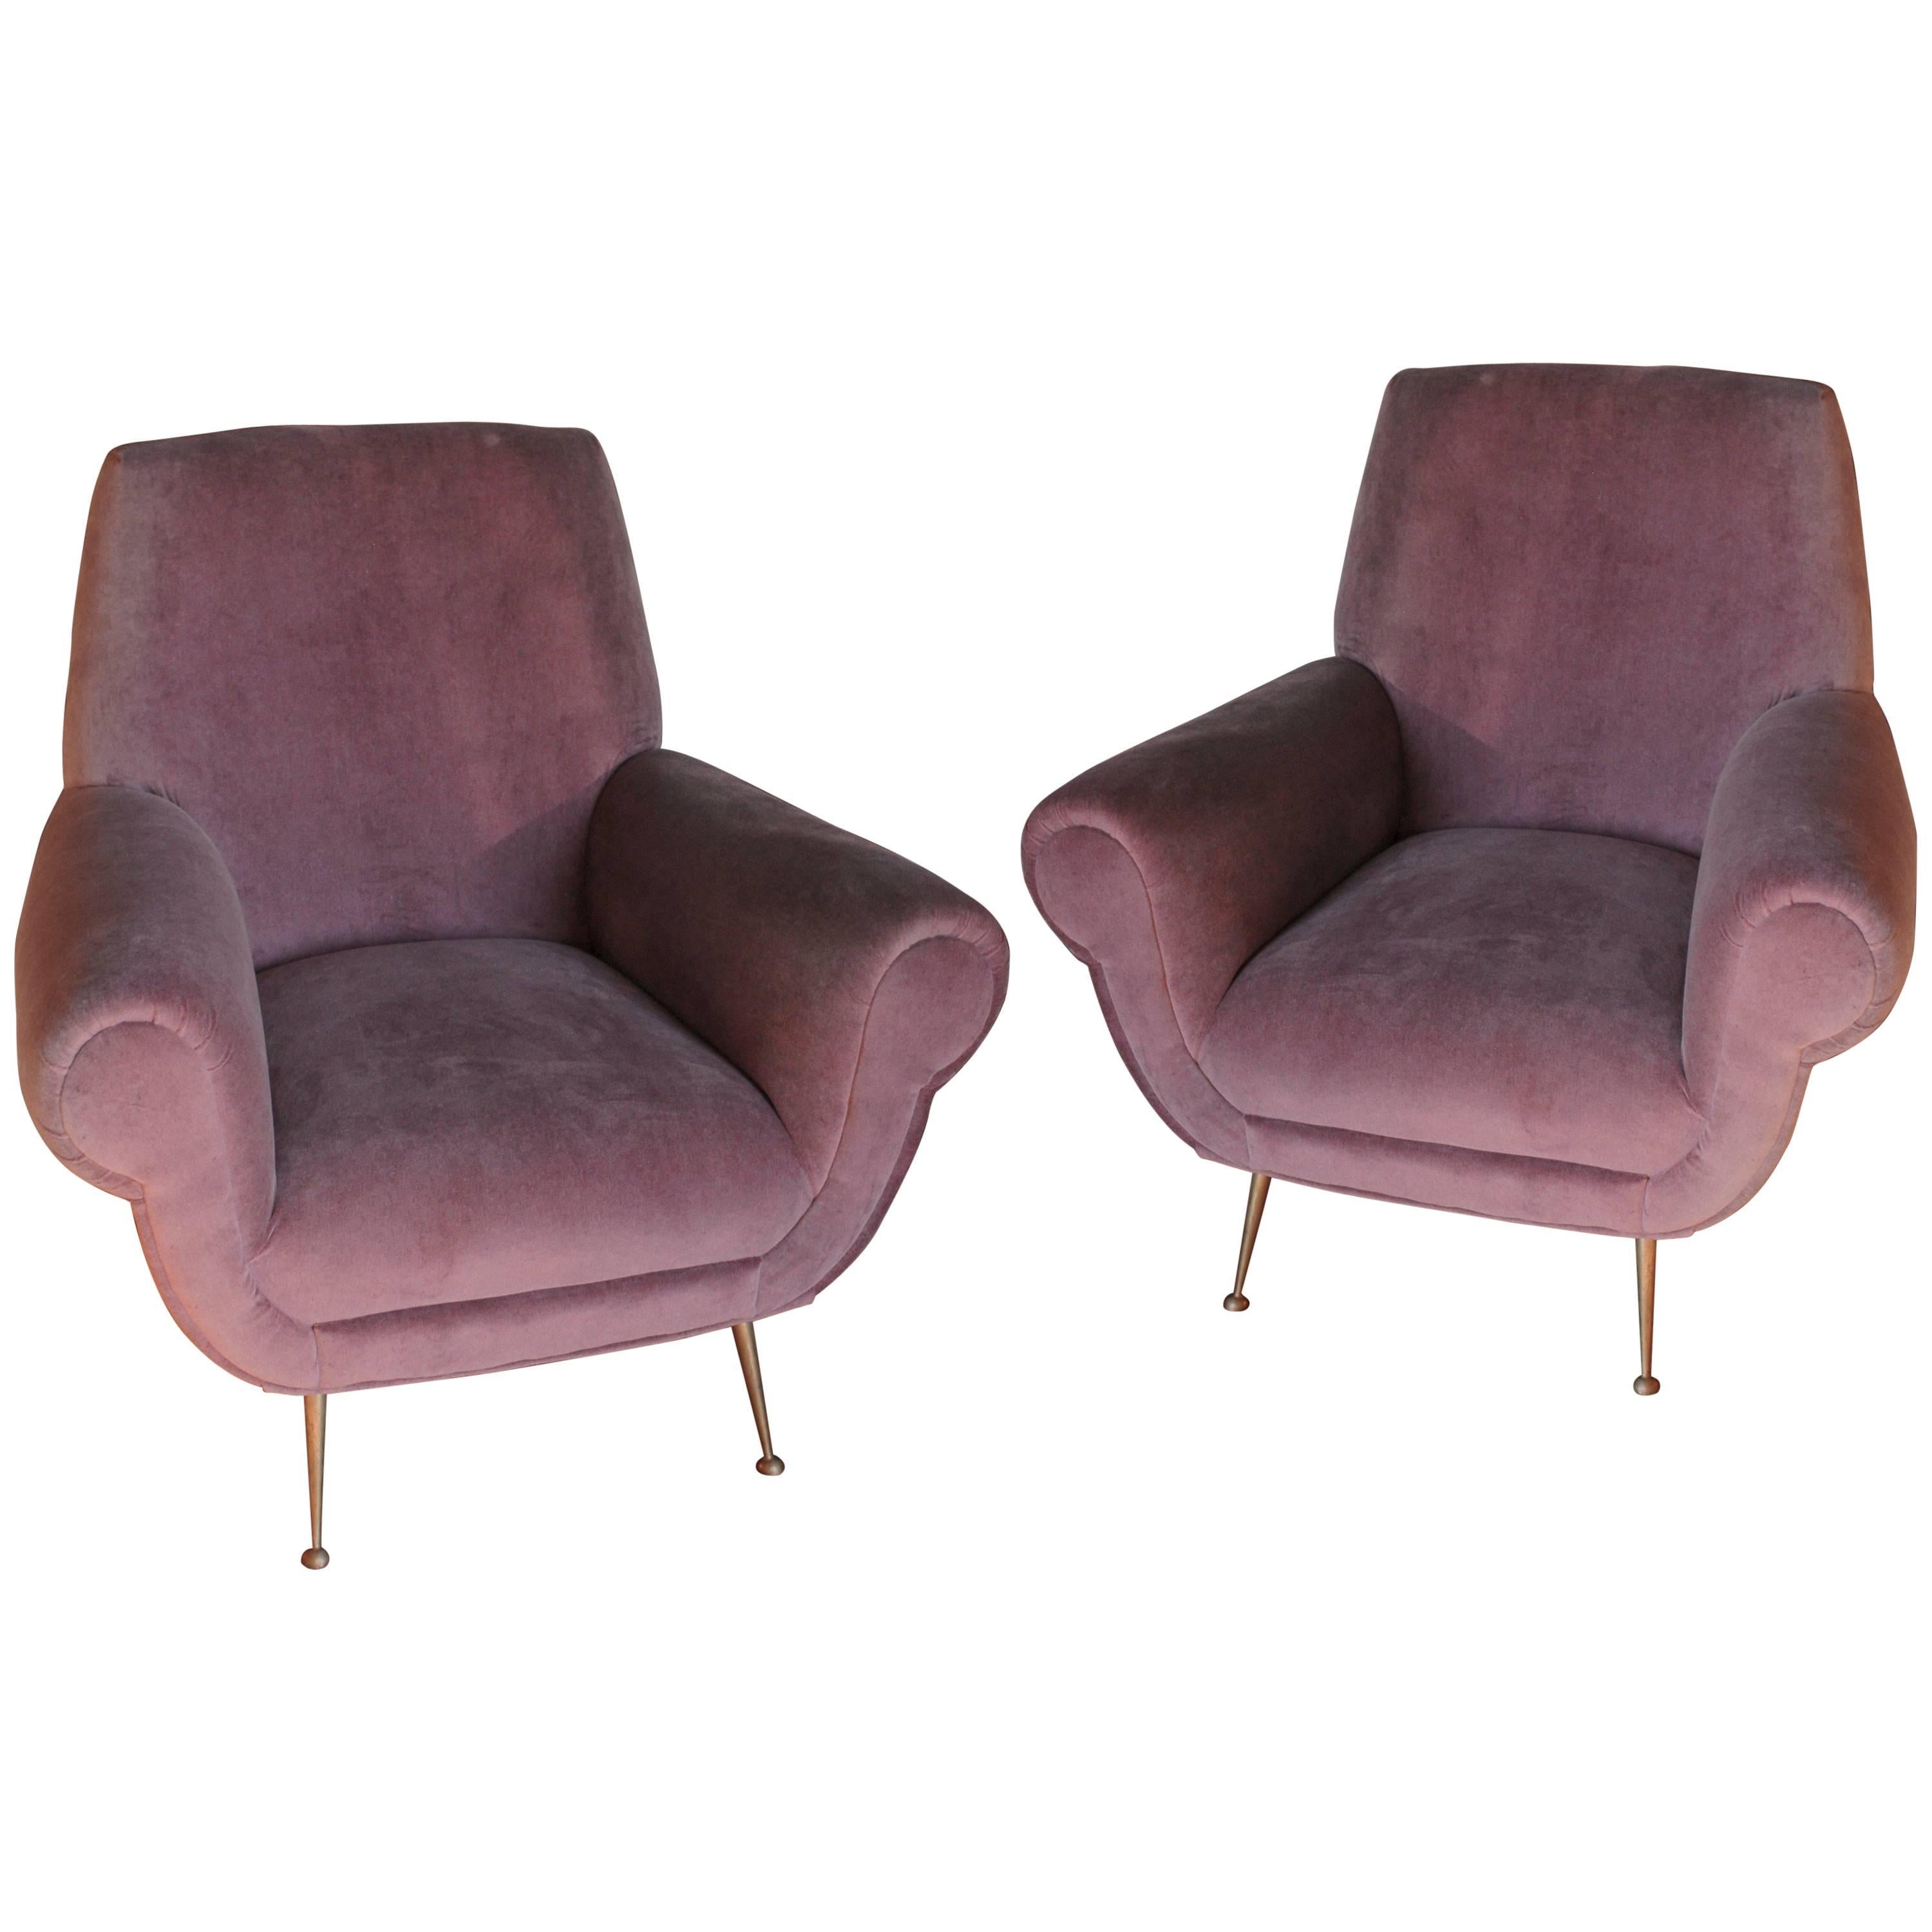 Two Armchairs, Gigi Radice for Minotti, Fully Restored, Soft Cotton Velvet 1950s